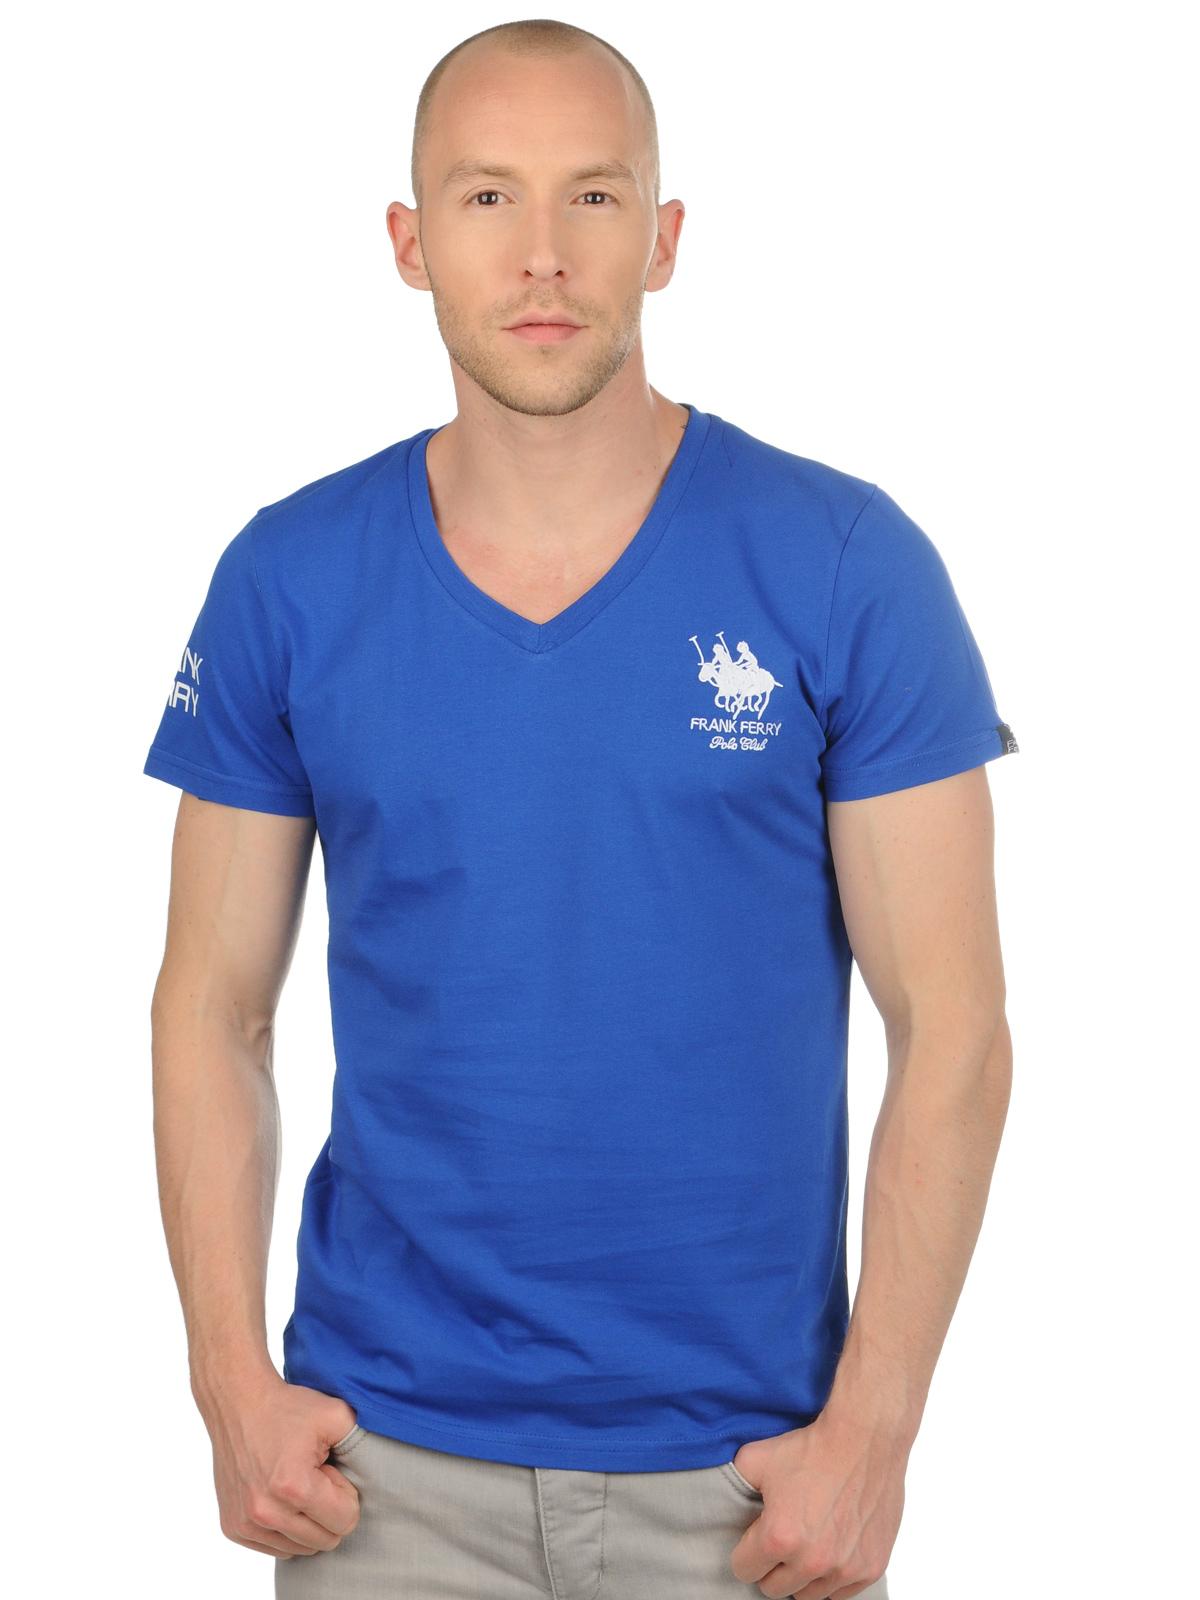 Foto Frank Ferry Polo Club Camiseta azul real L